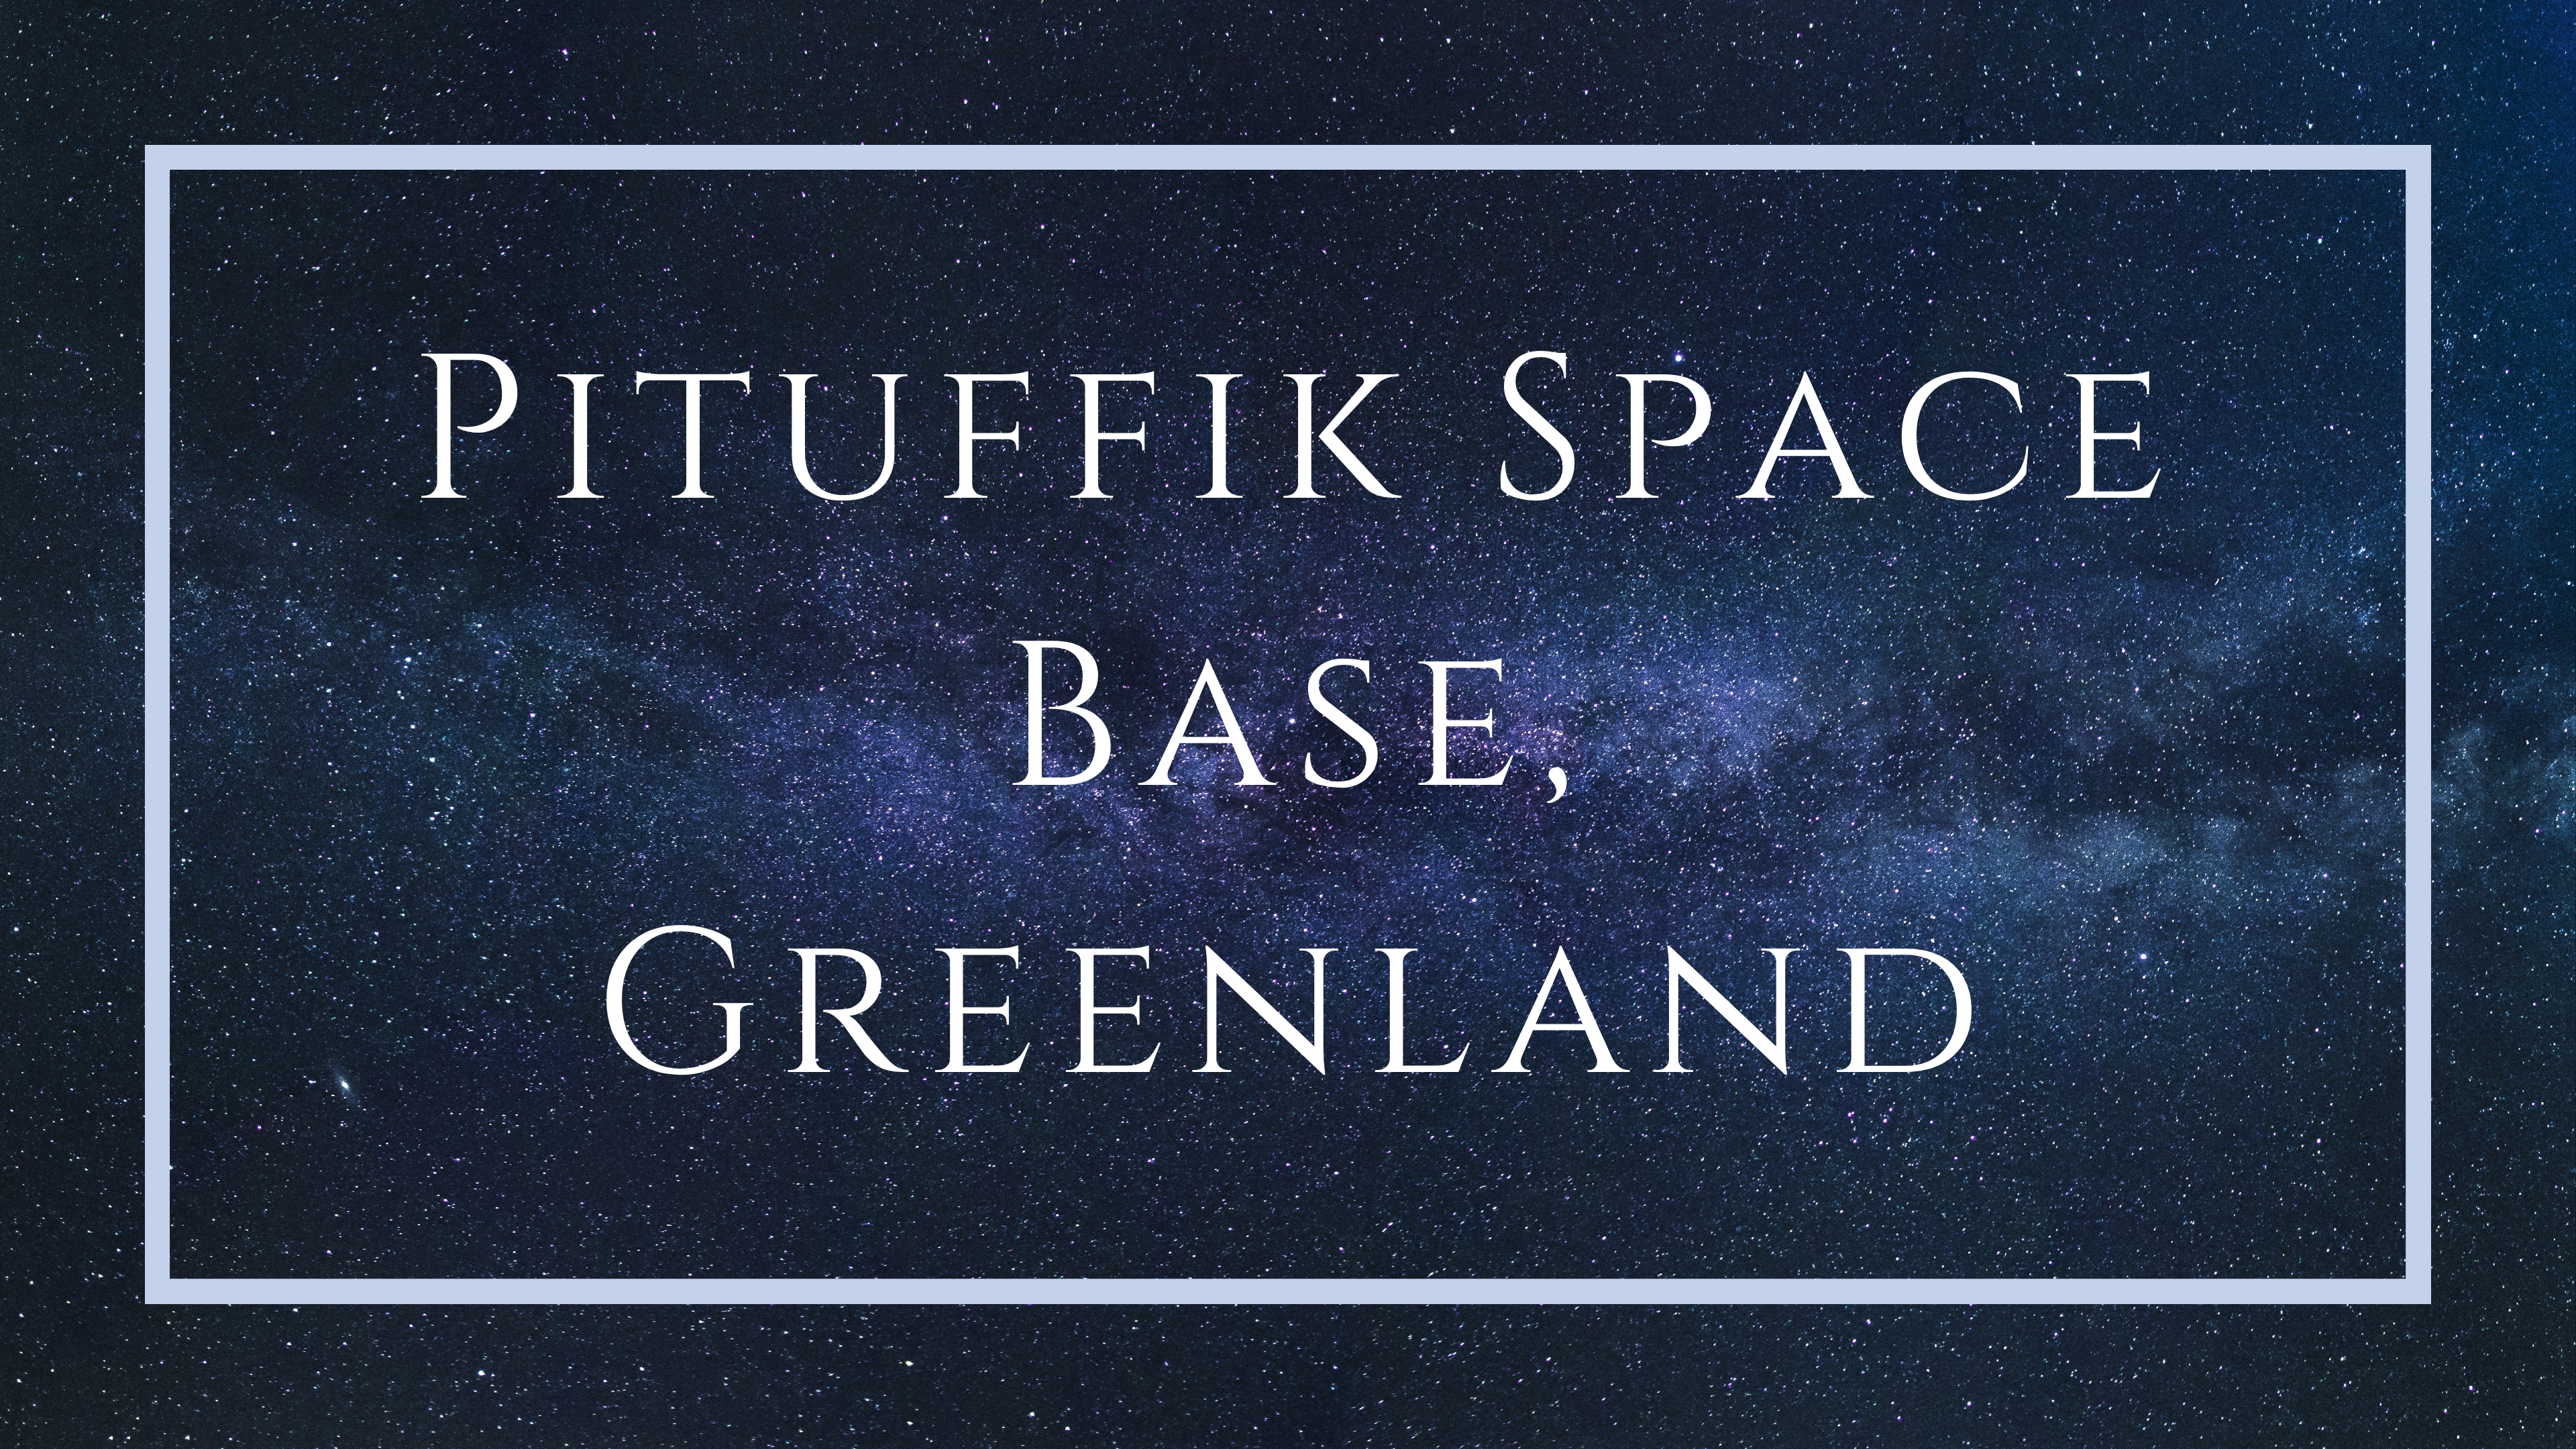 Pituffik Space Base